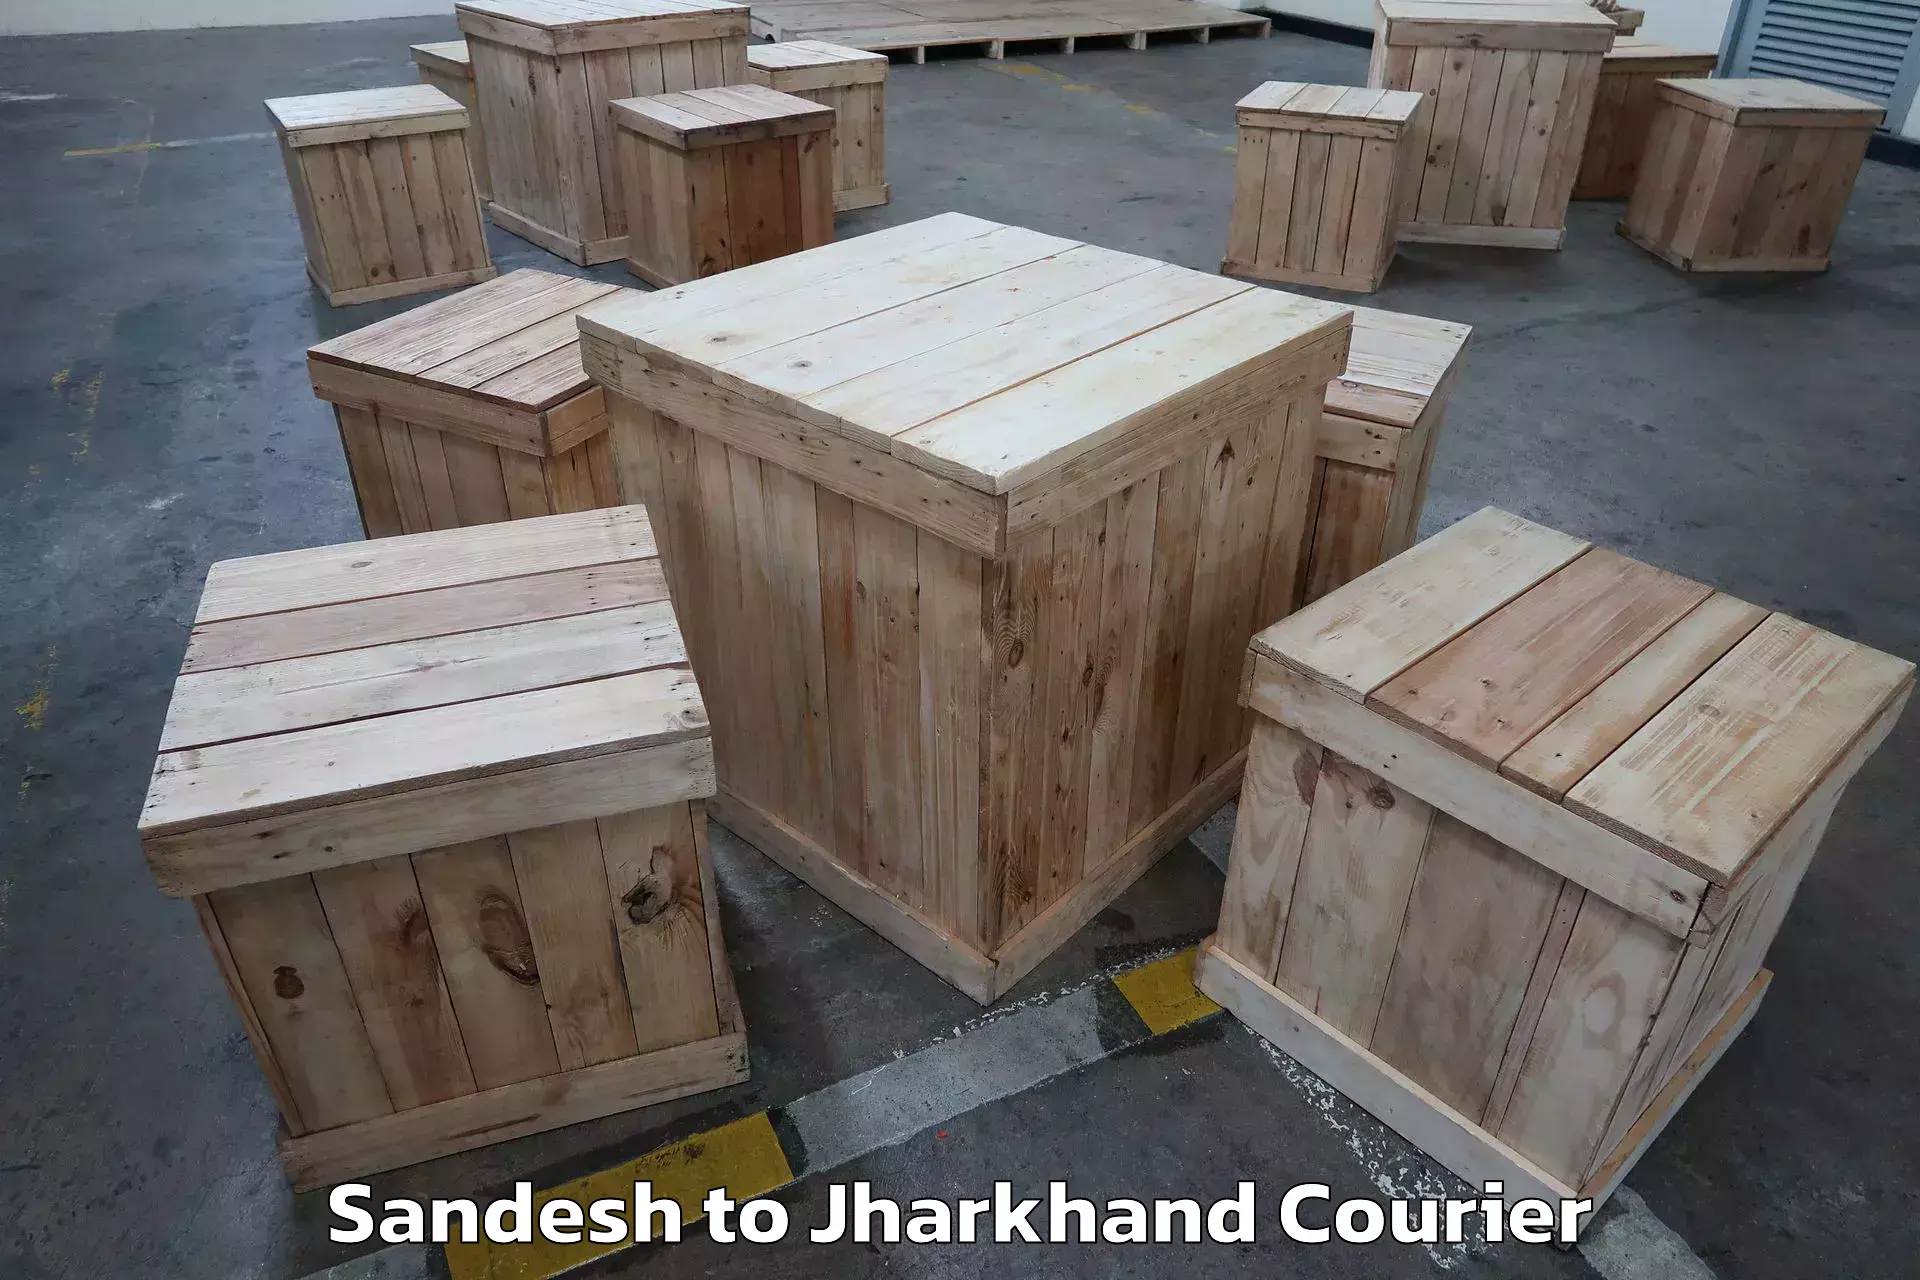 Quality moving company Sandesh to Bokaro